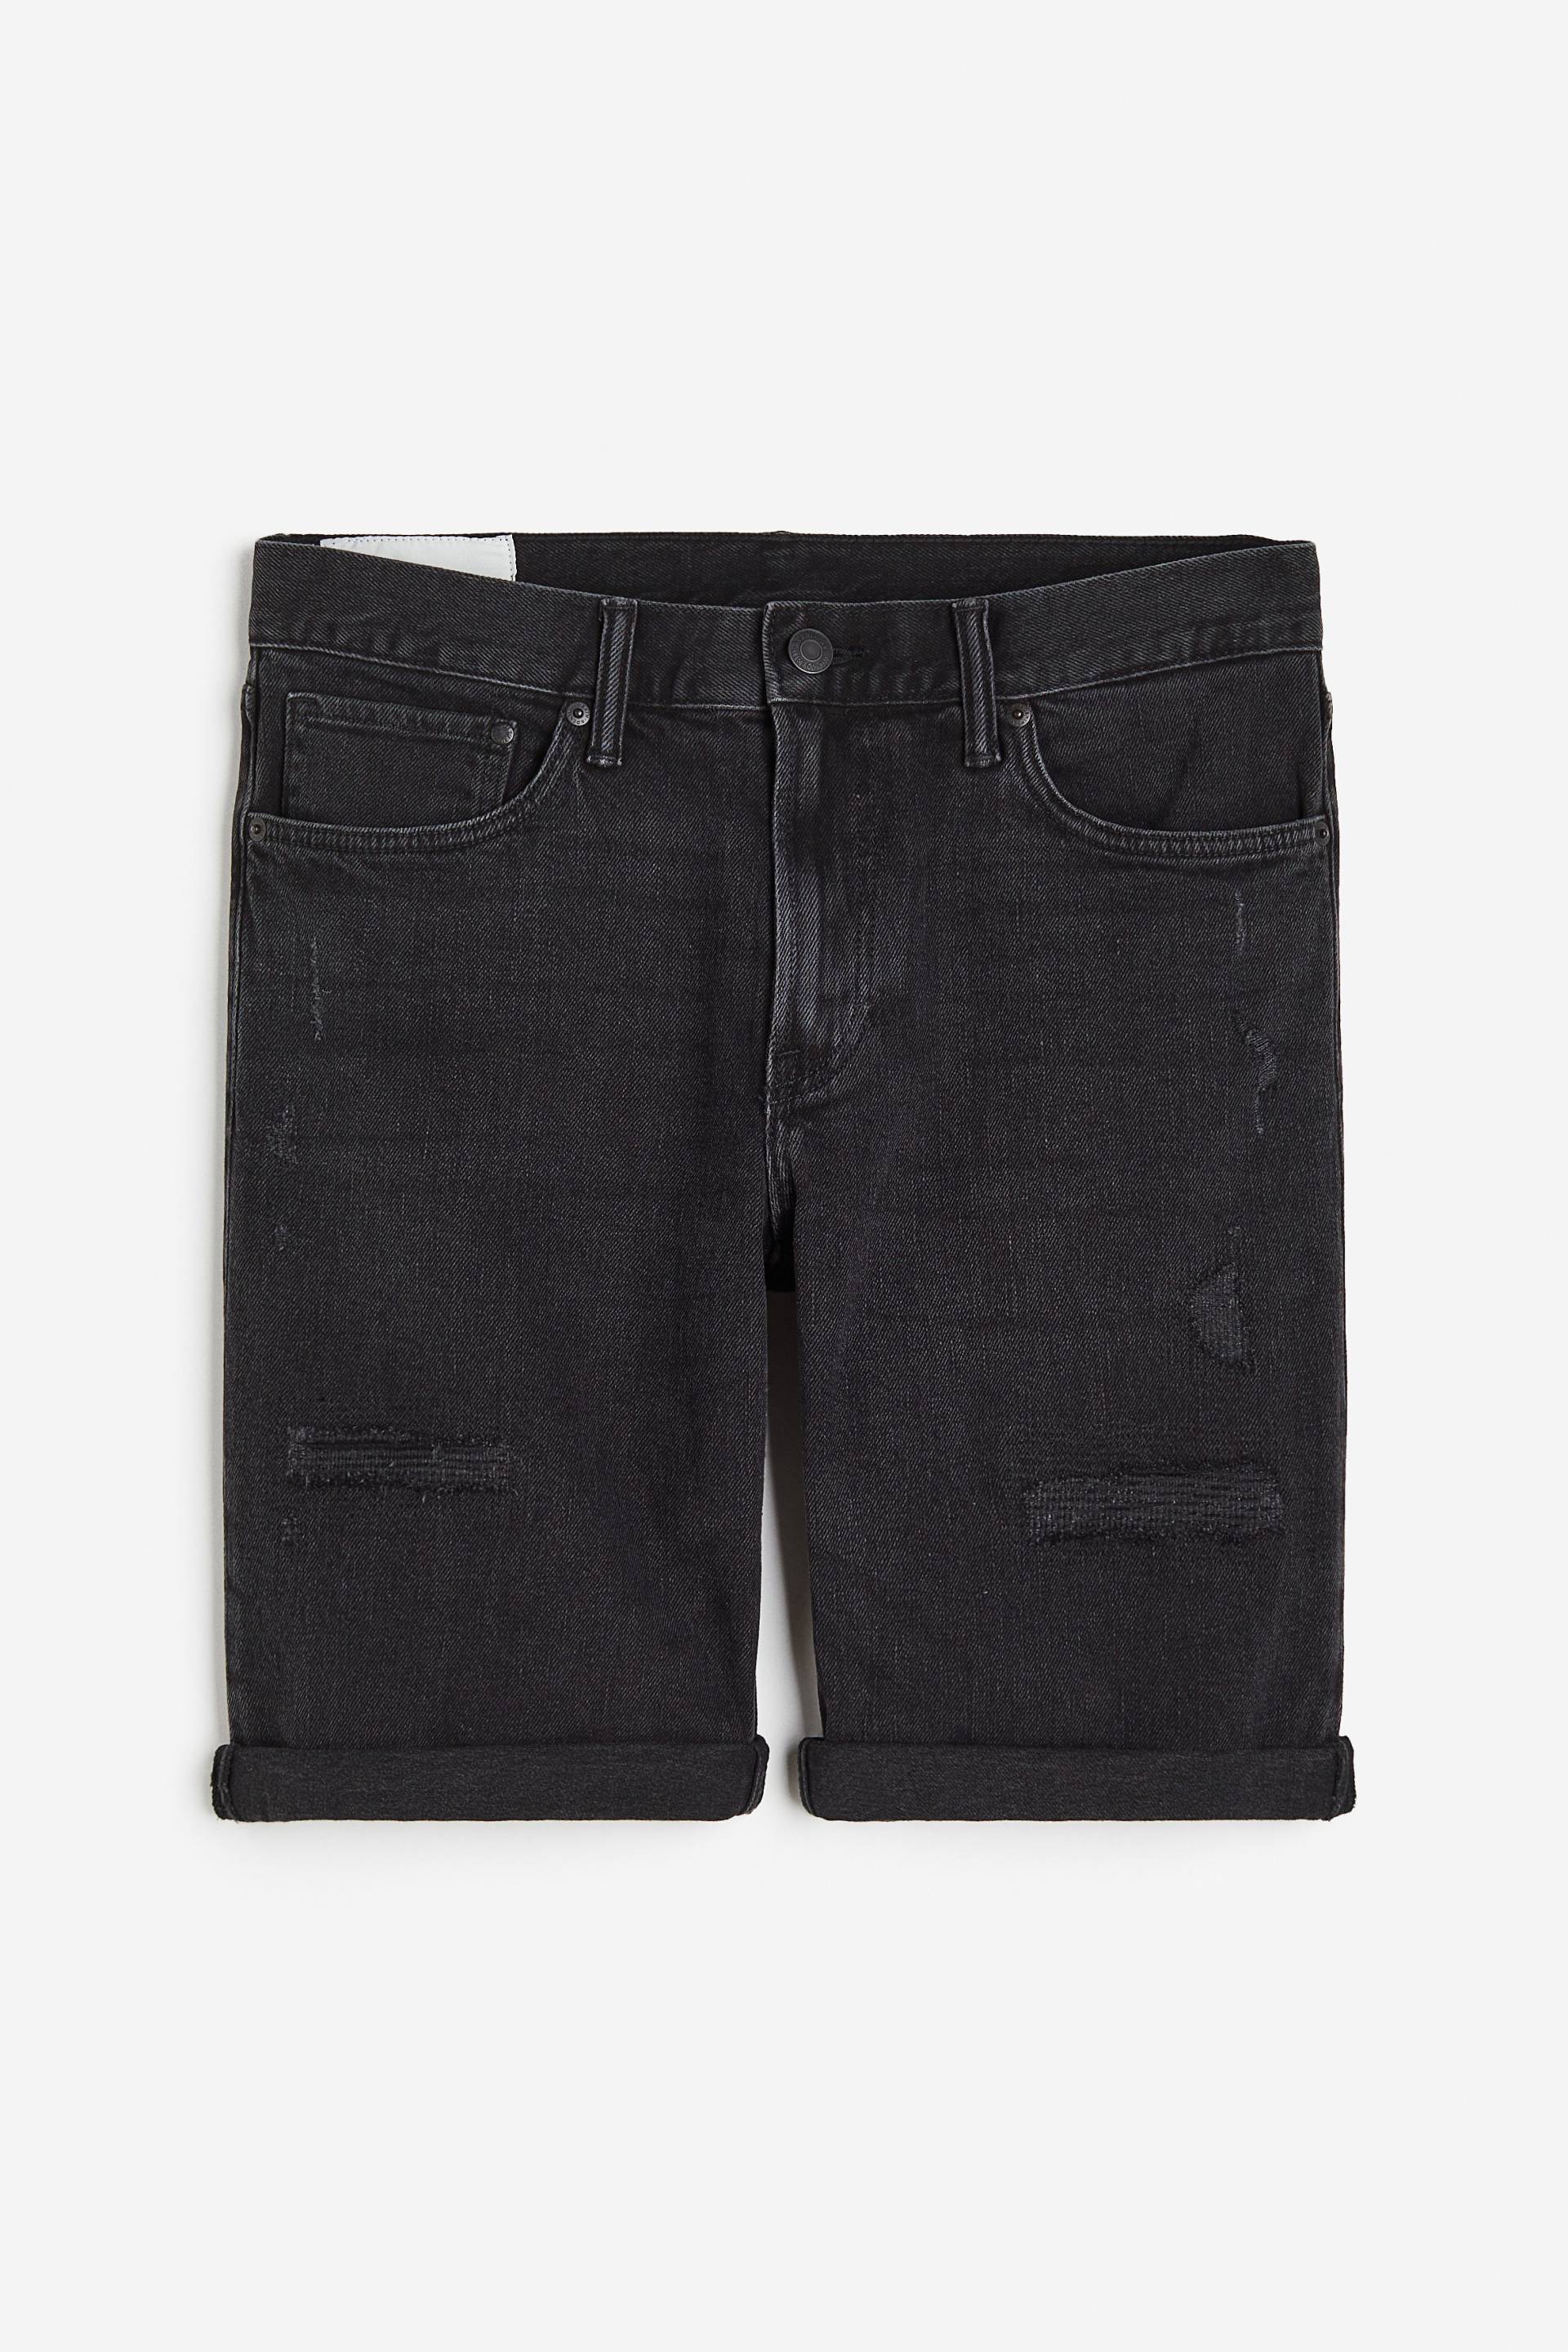 H&M Jeansshorts Regular Schwarz in Größe W 40. Farbe: Denim black von H&M